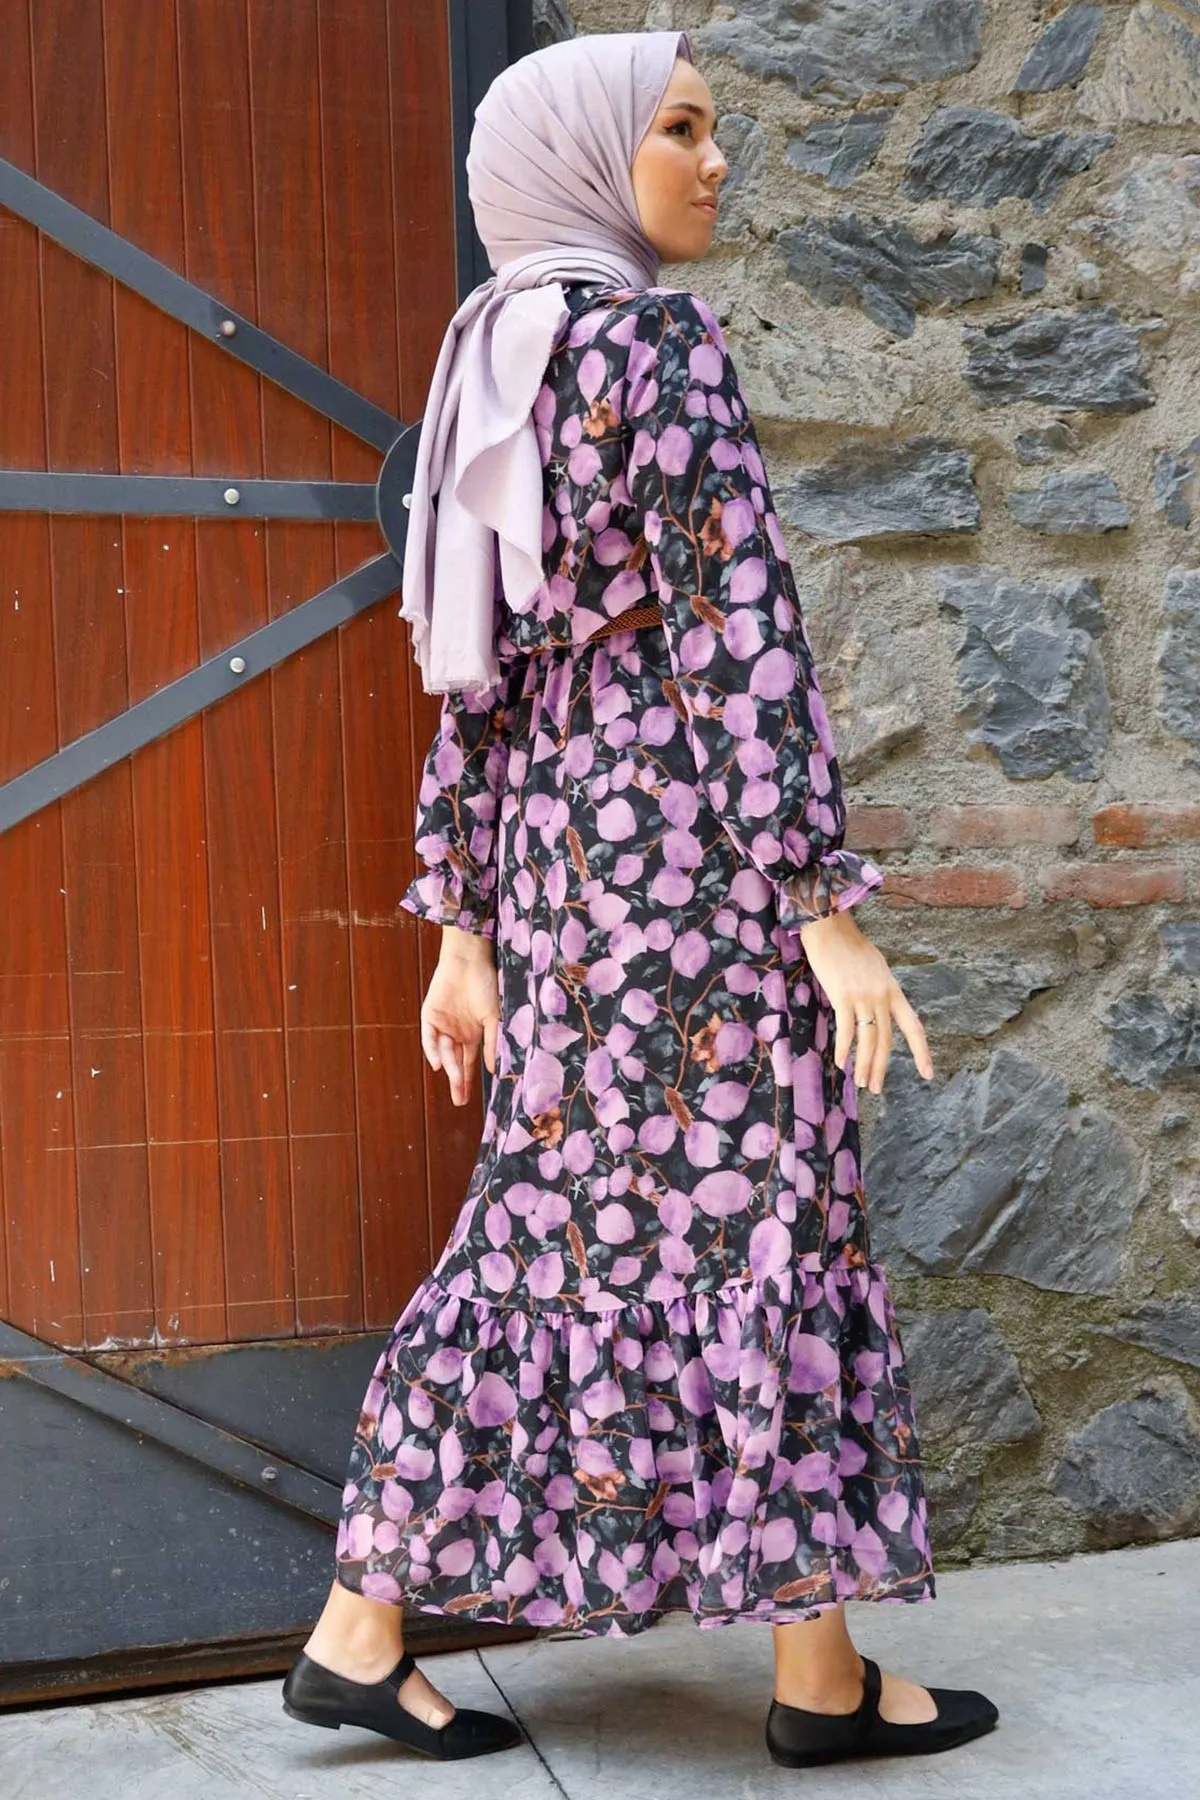 

Muslim Women Patterned Arched Chiffon Hijab Long Dress Summer New Season 2021 Fashion Islamic Clothing Abaya Hijab Tunik Turkey